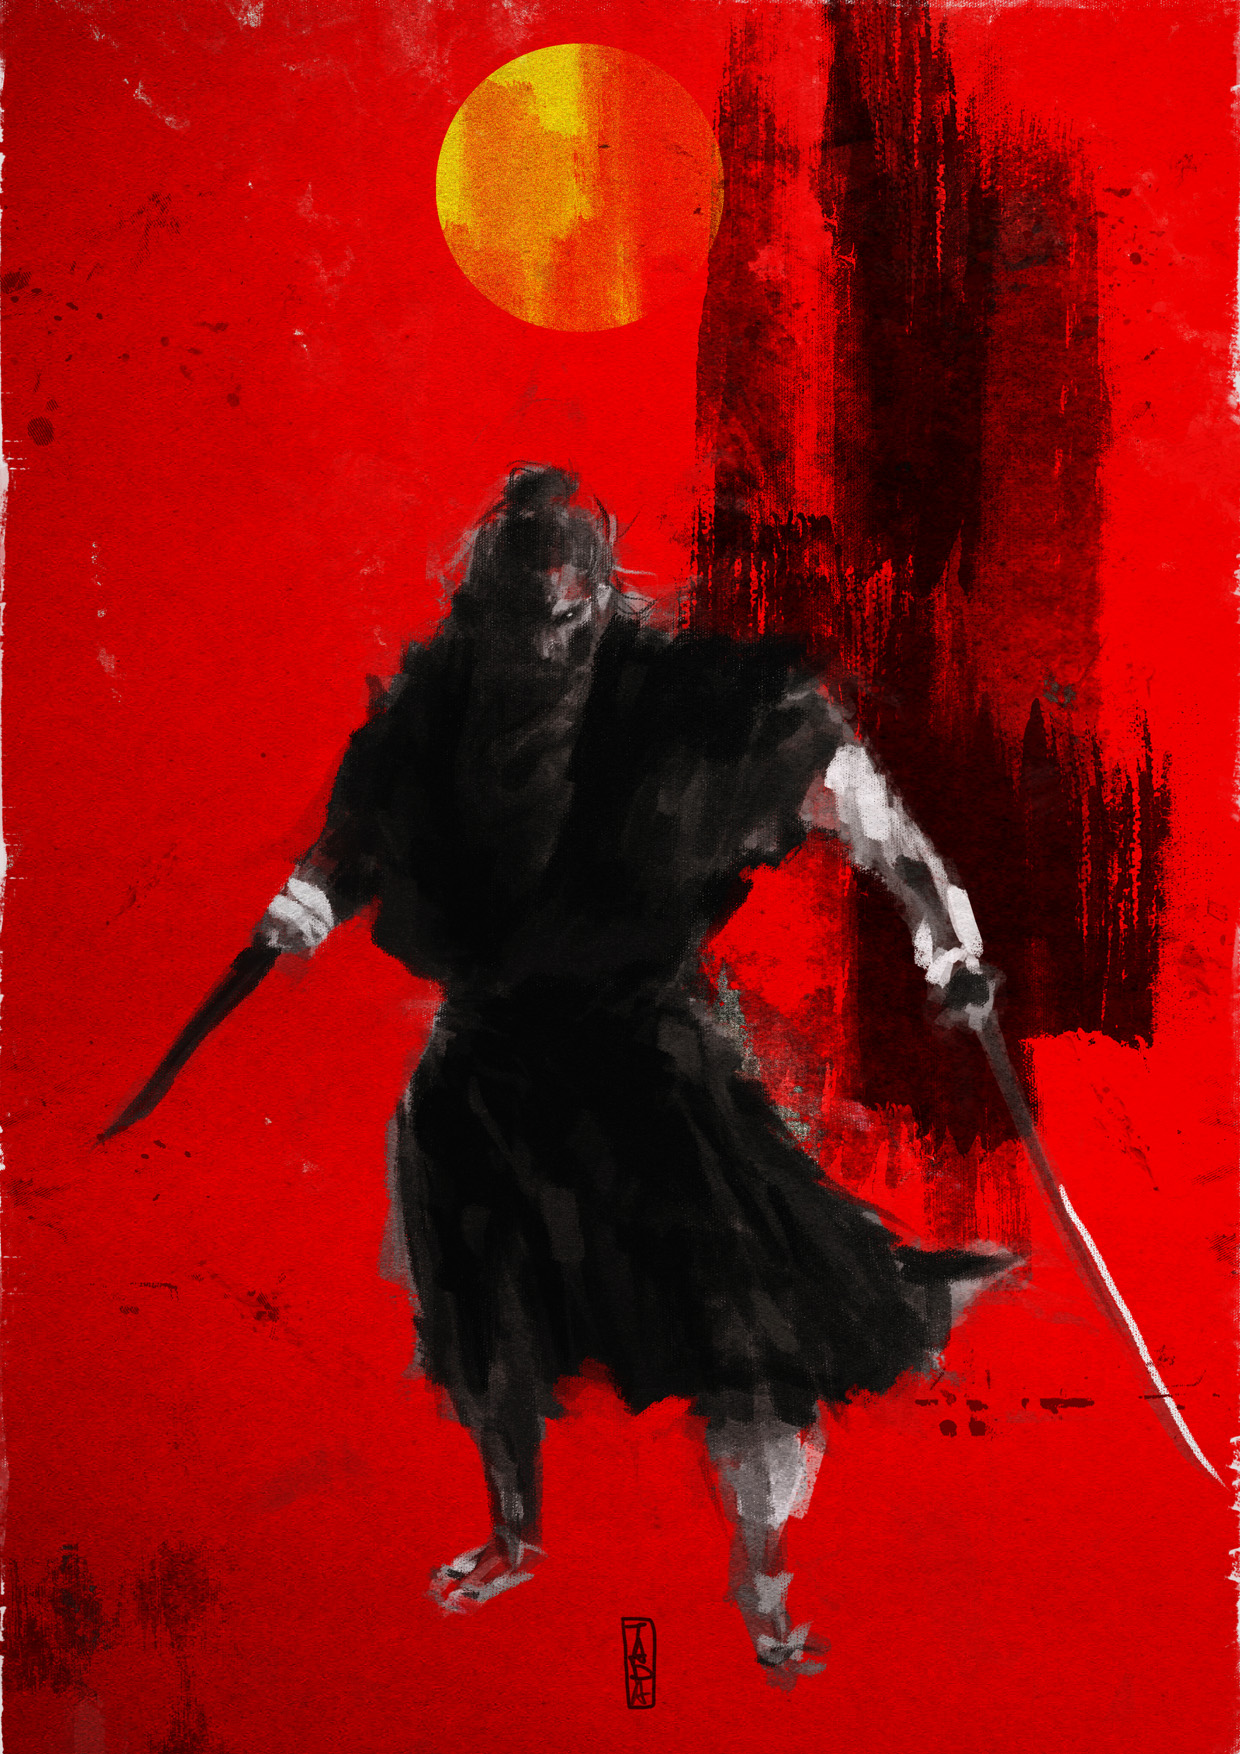 One-armed Samurai by MangaAssault on DeviantArt